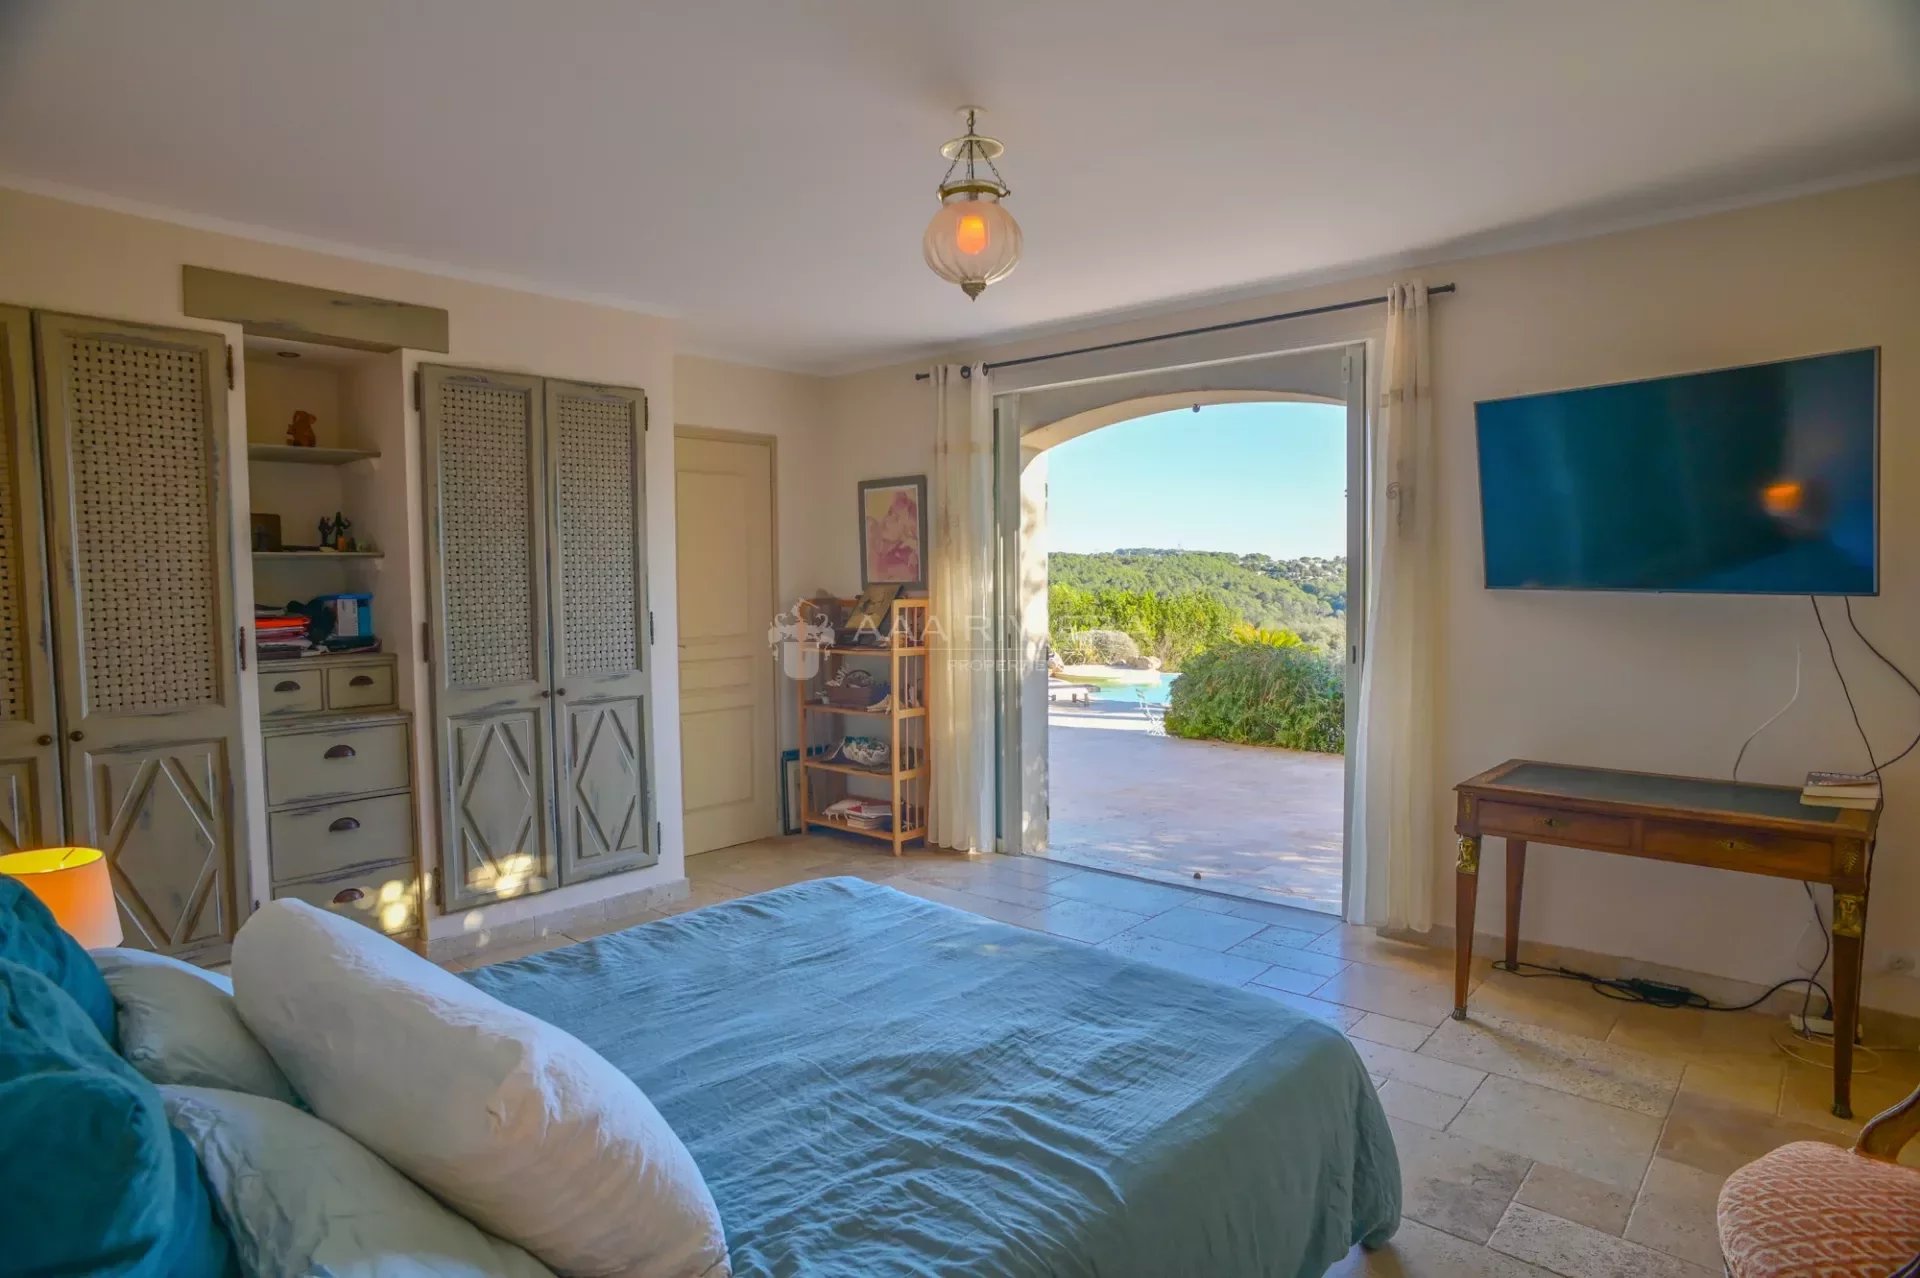 Mellom Cannes og Grasse – Nydelig eiendom med sv.basseg, 6 soverom og panorama utsikt i fredlige omgivelser